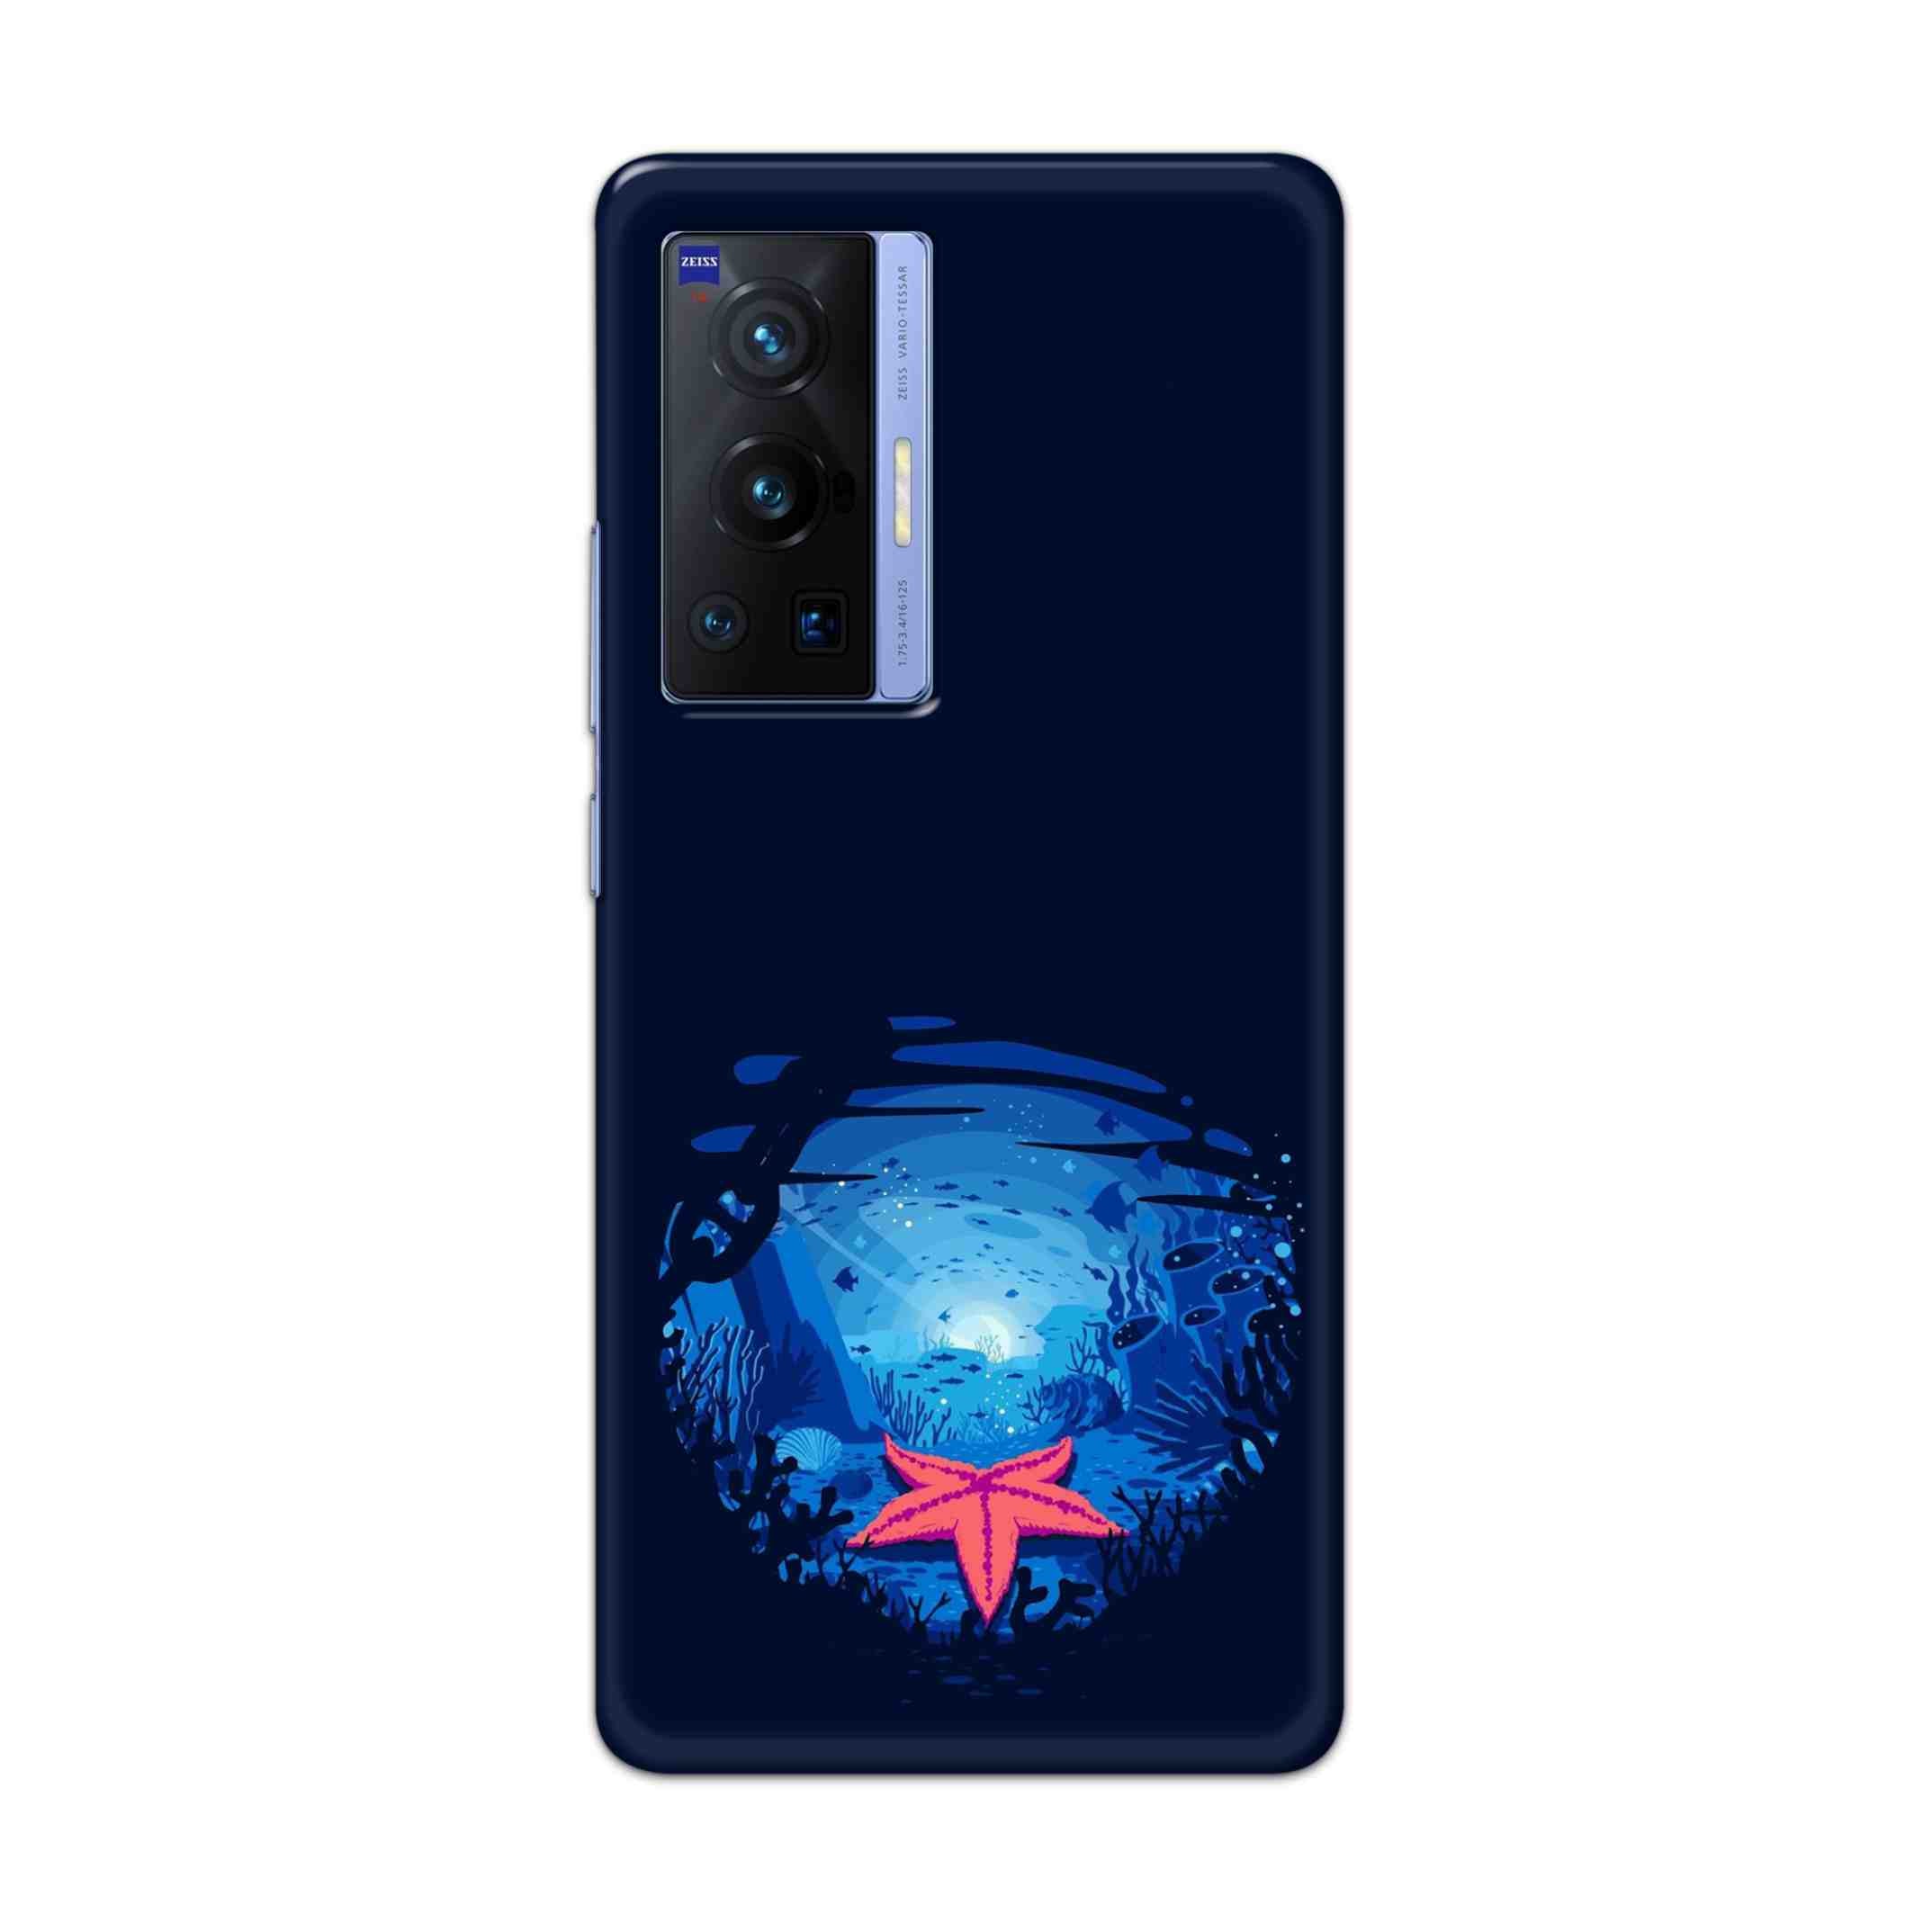 Buy Star Fresh Hard Back Mobile Phone Case Cover For Vivo X70 Pro Online